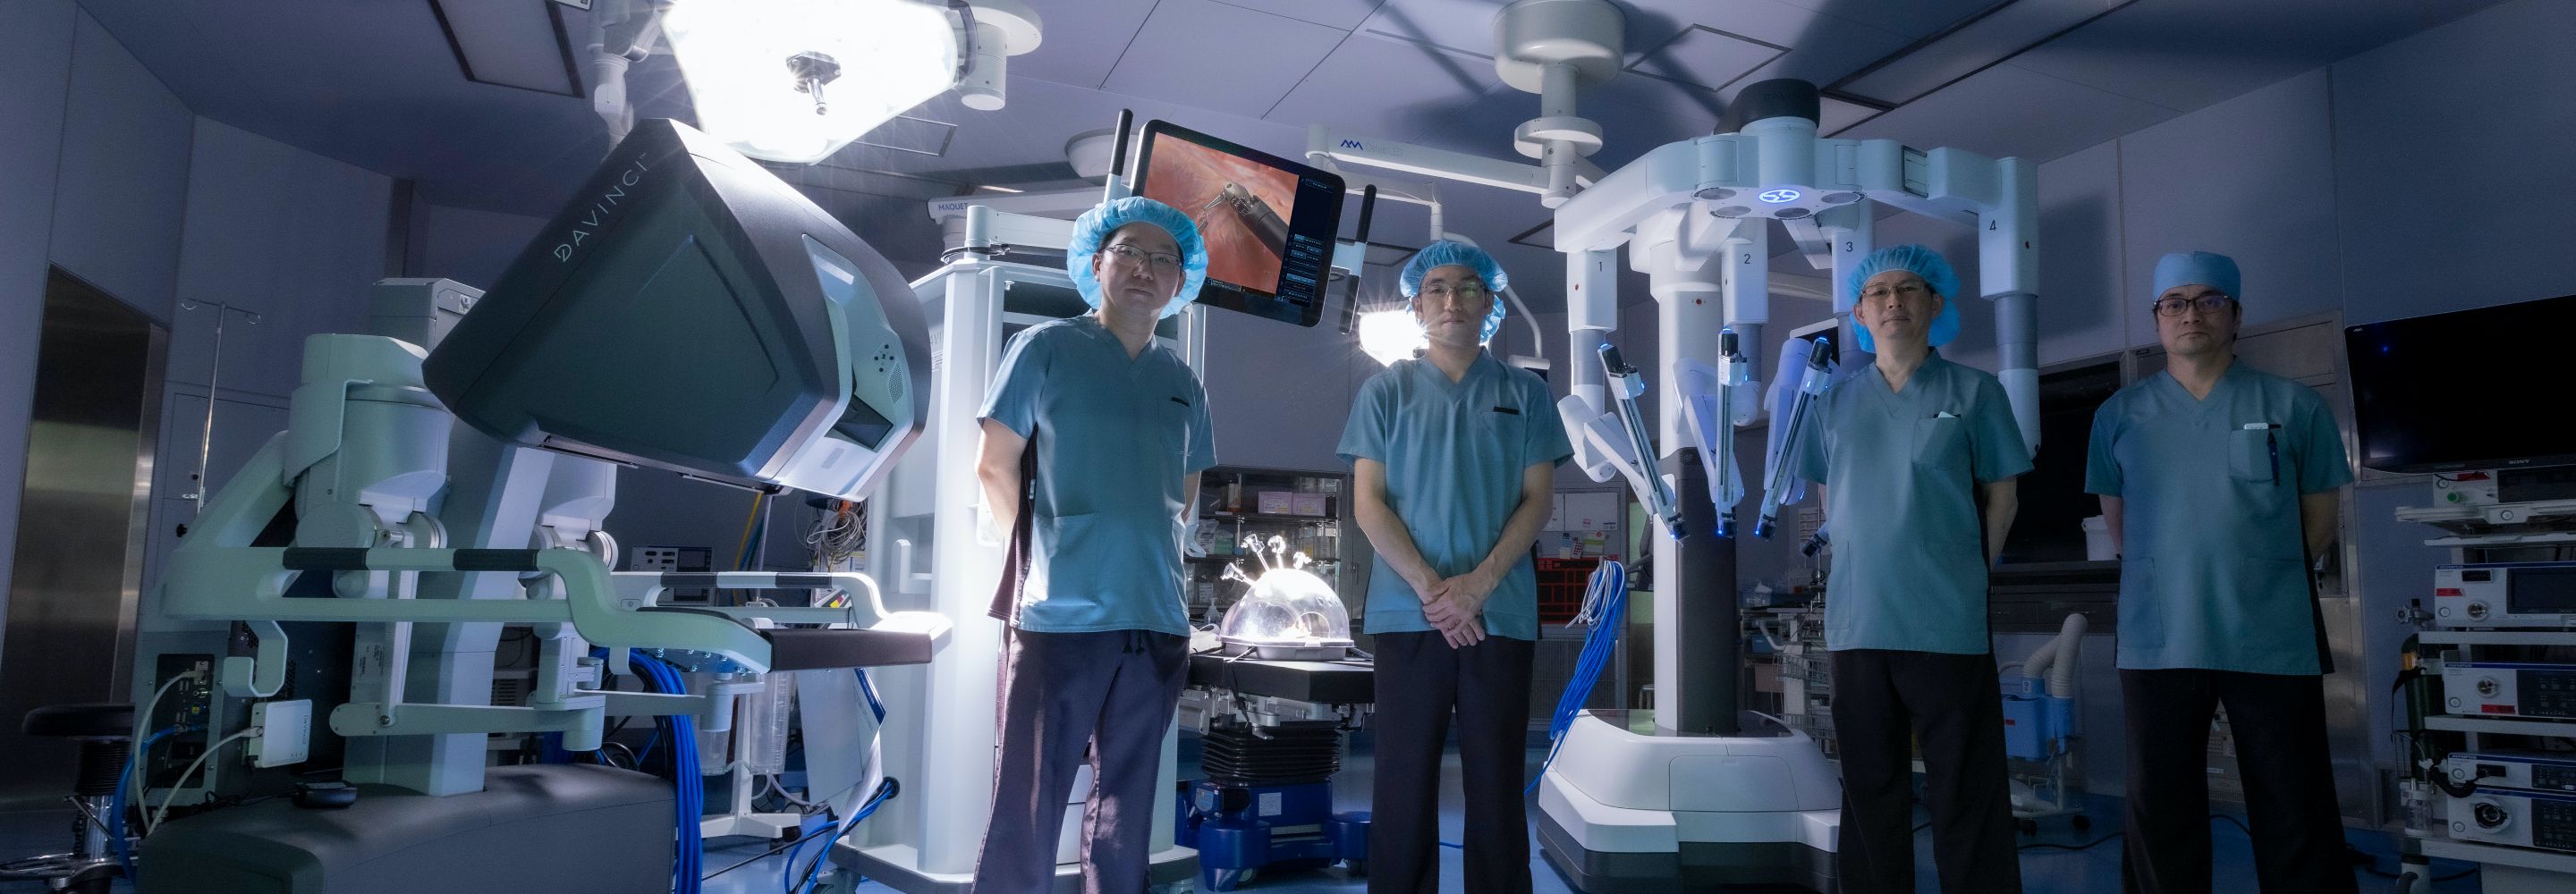 低侵襲手術支援ロボット da Vinci Xi 導入